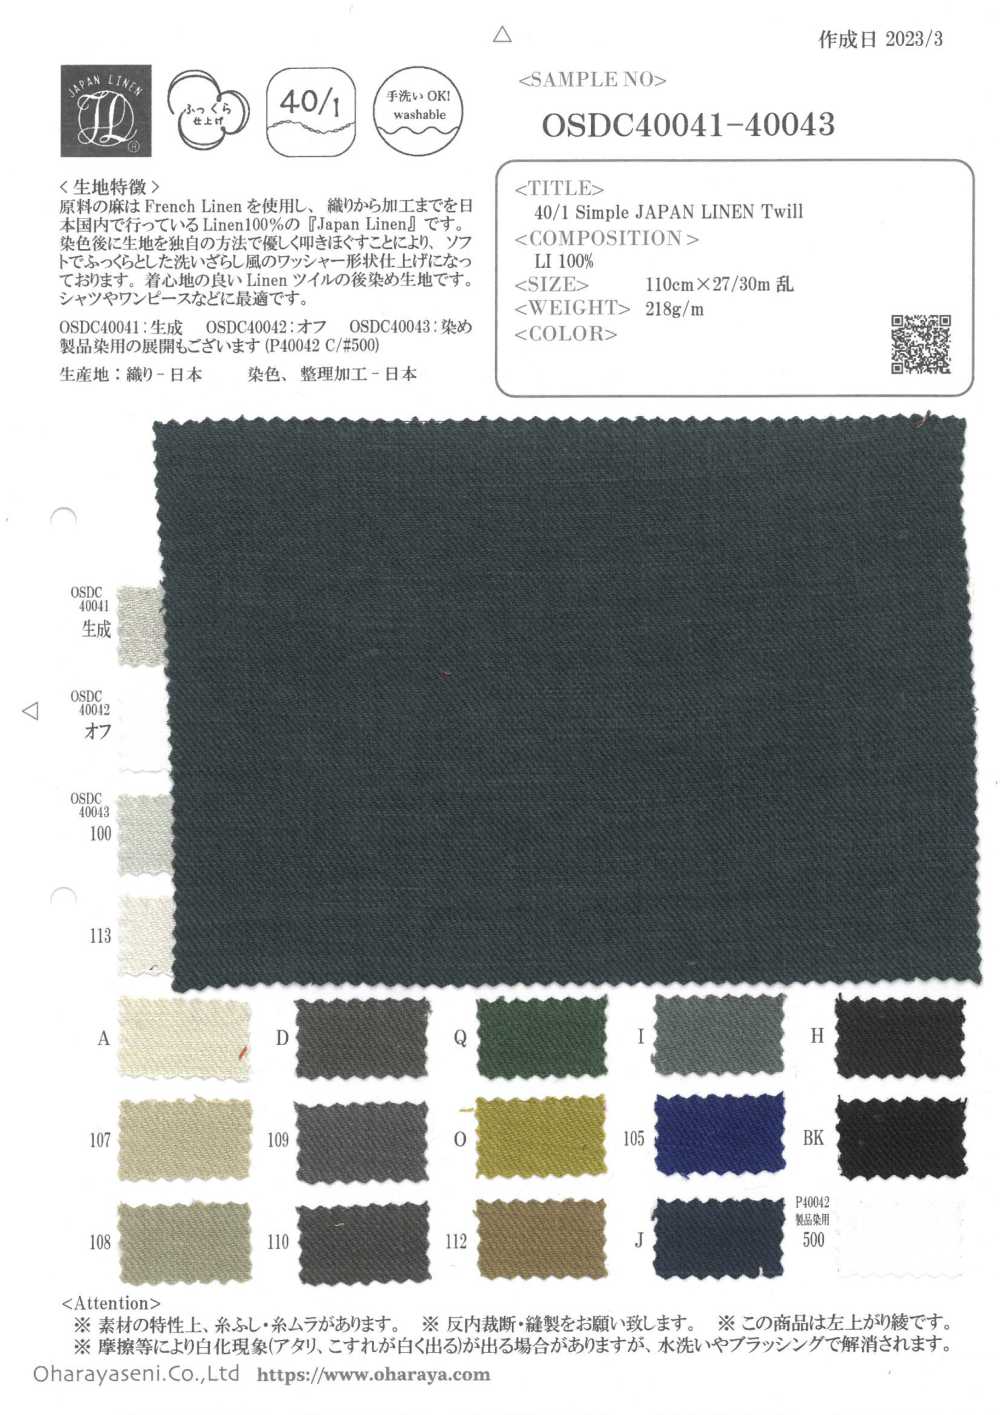 OSDC40041 Sarga 40/1 Simple JAPAN LINEN (Crudo)[Fabrica Textil] Oharayaseni